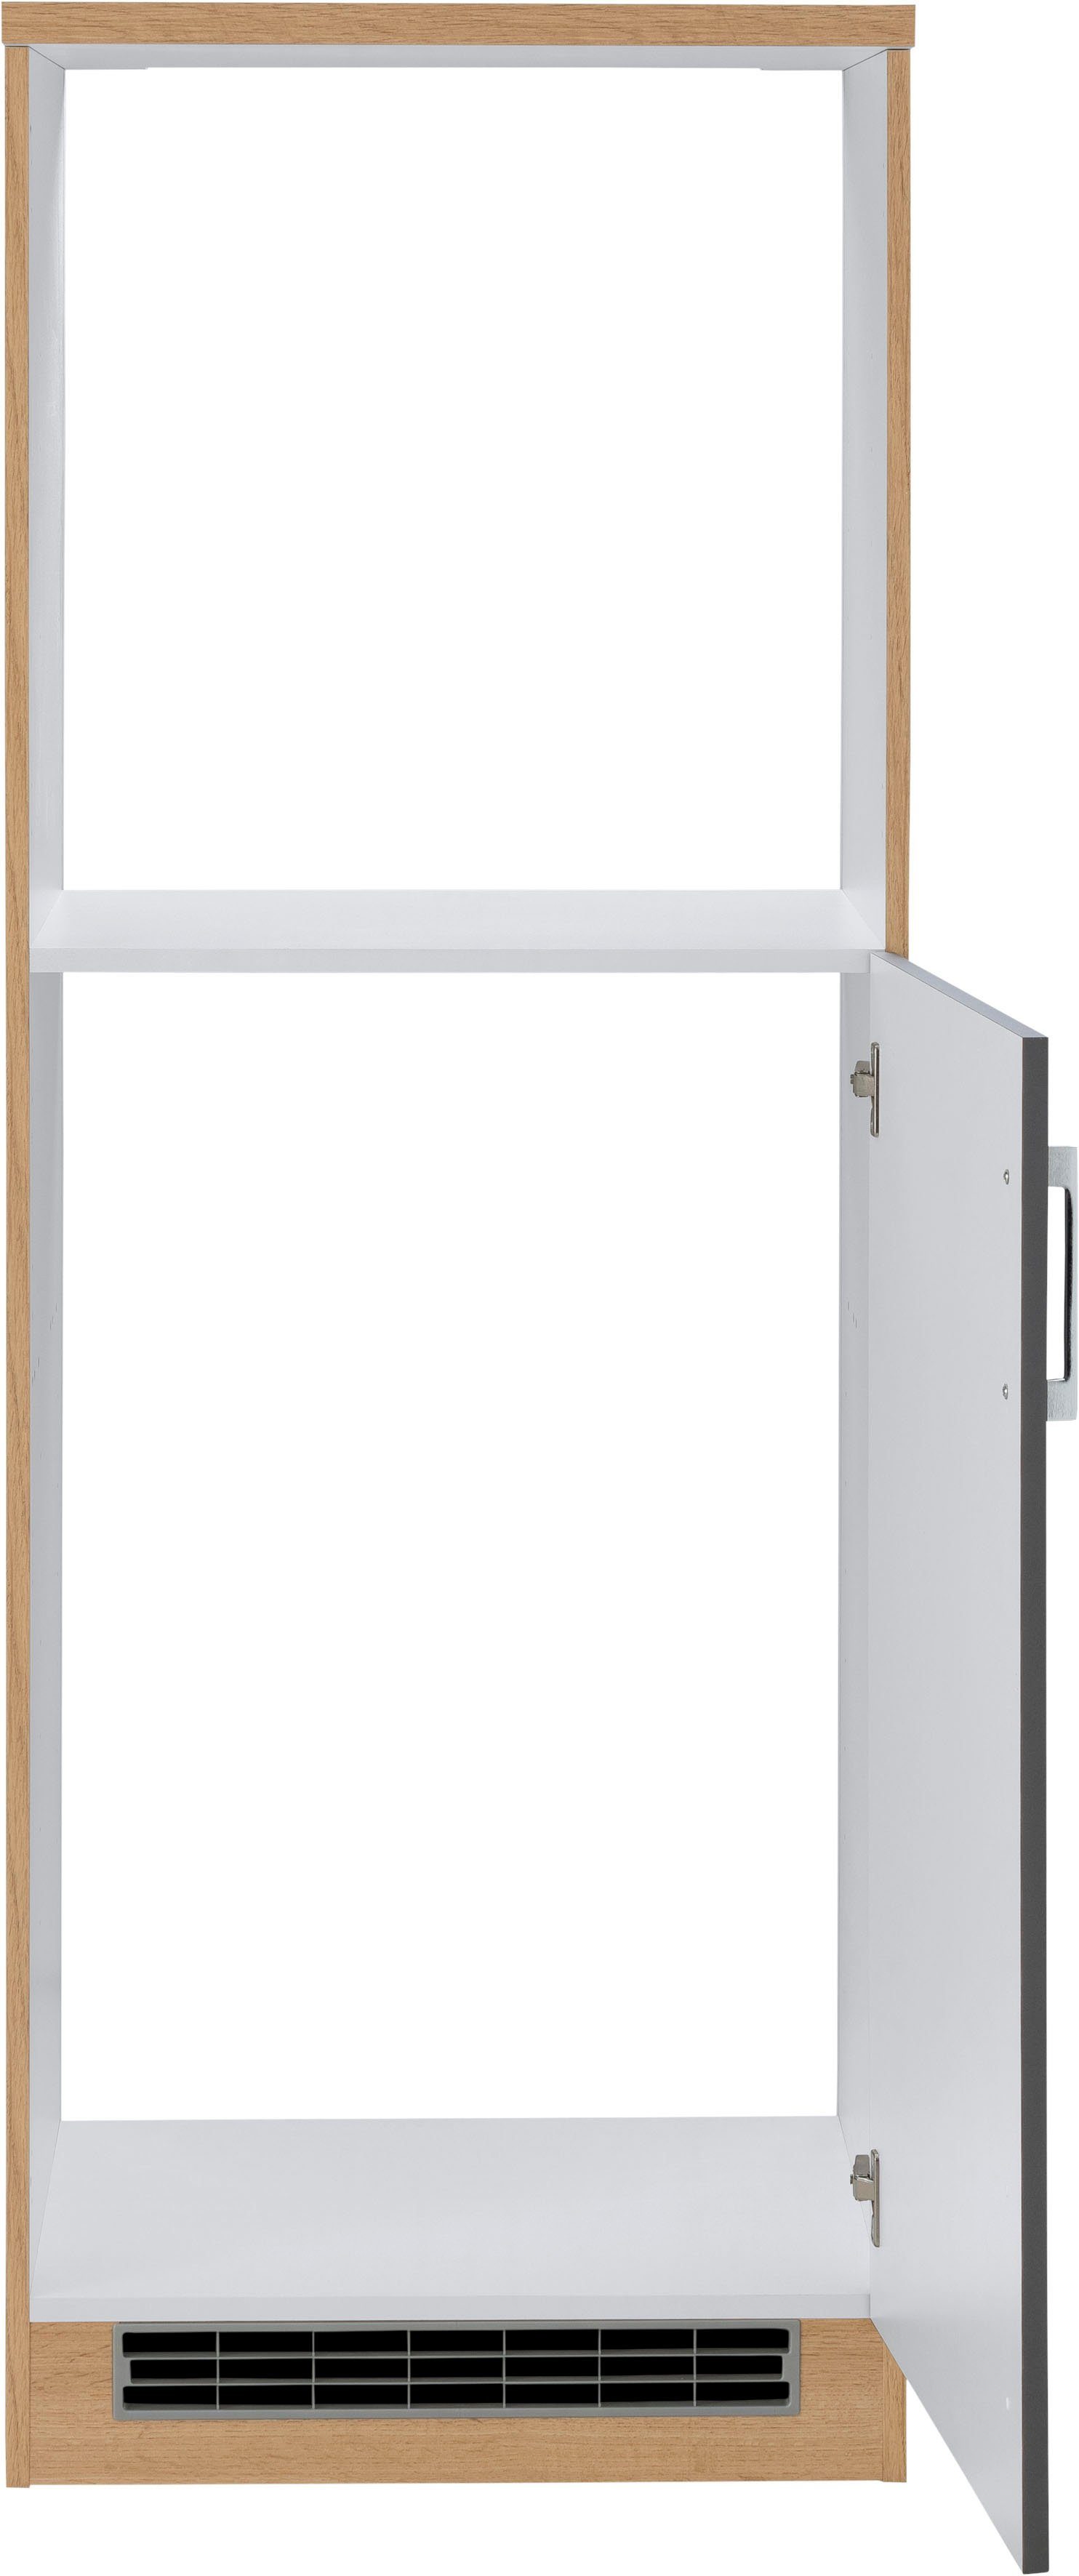 MÖBEL wotaneiche Colmar und breit, hoch, 165 60 cm Einbaukühlschrank Einbaubackofen für anthrazit cm HELD | Backofen/Kühlumbauschrank